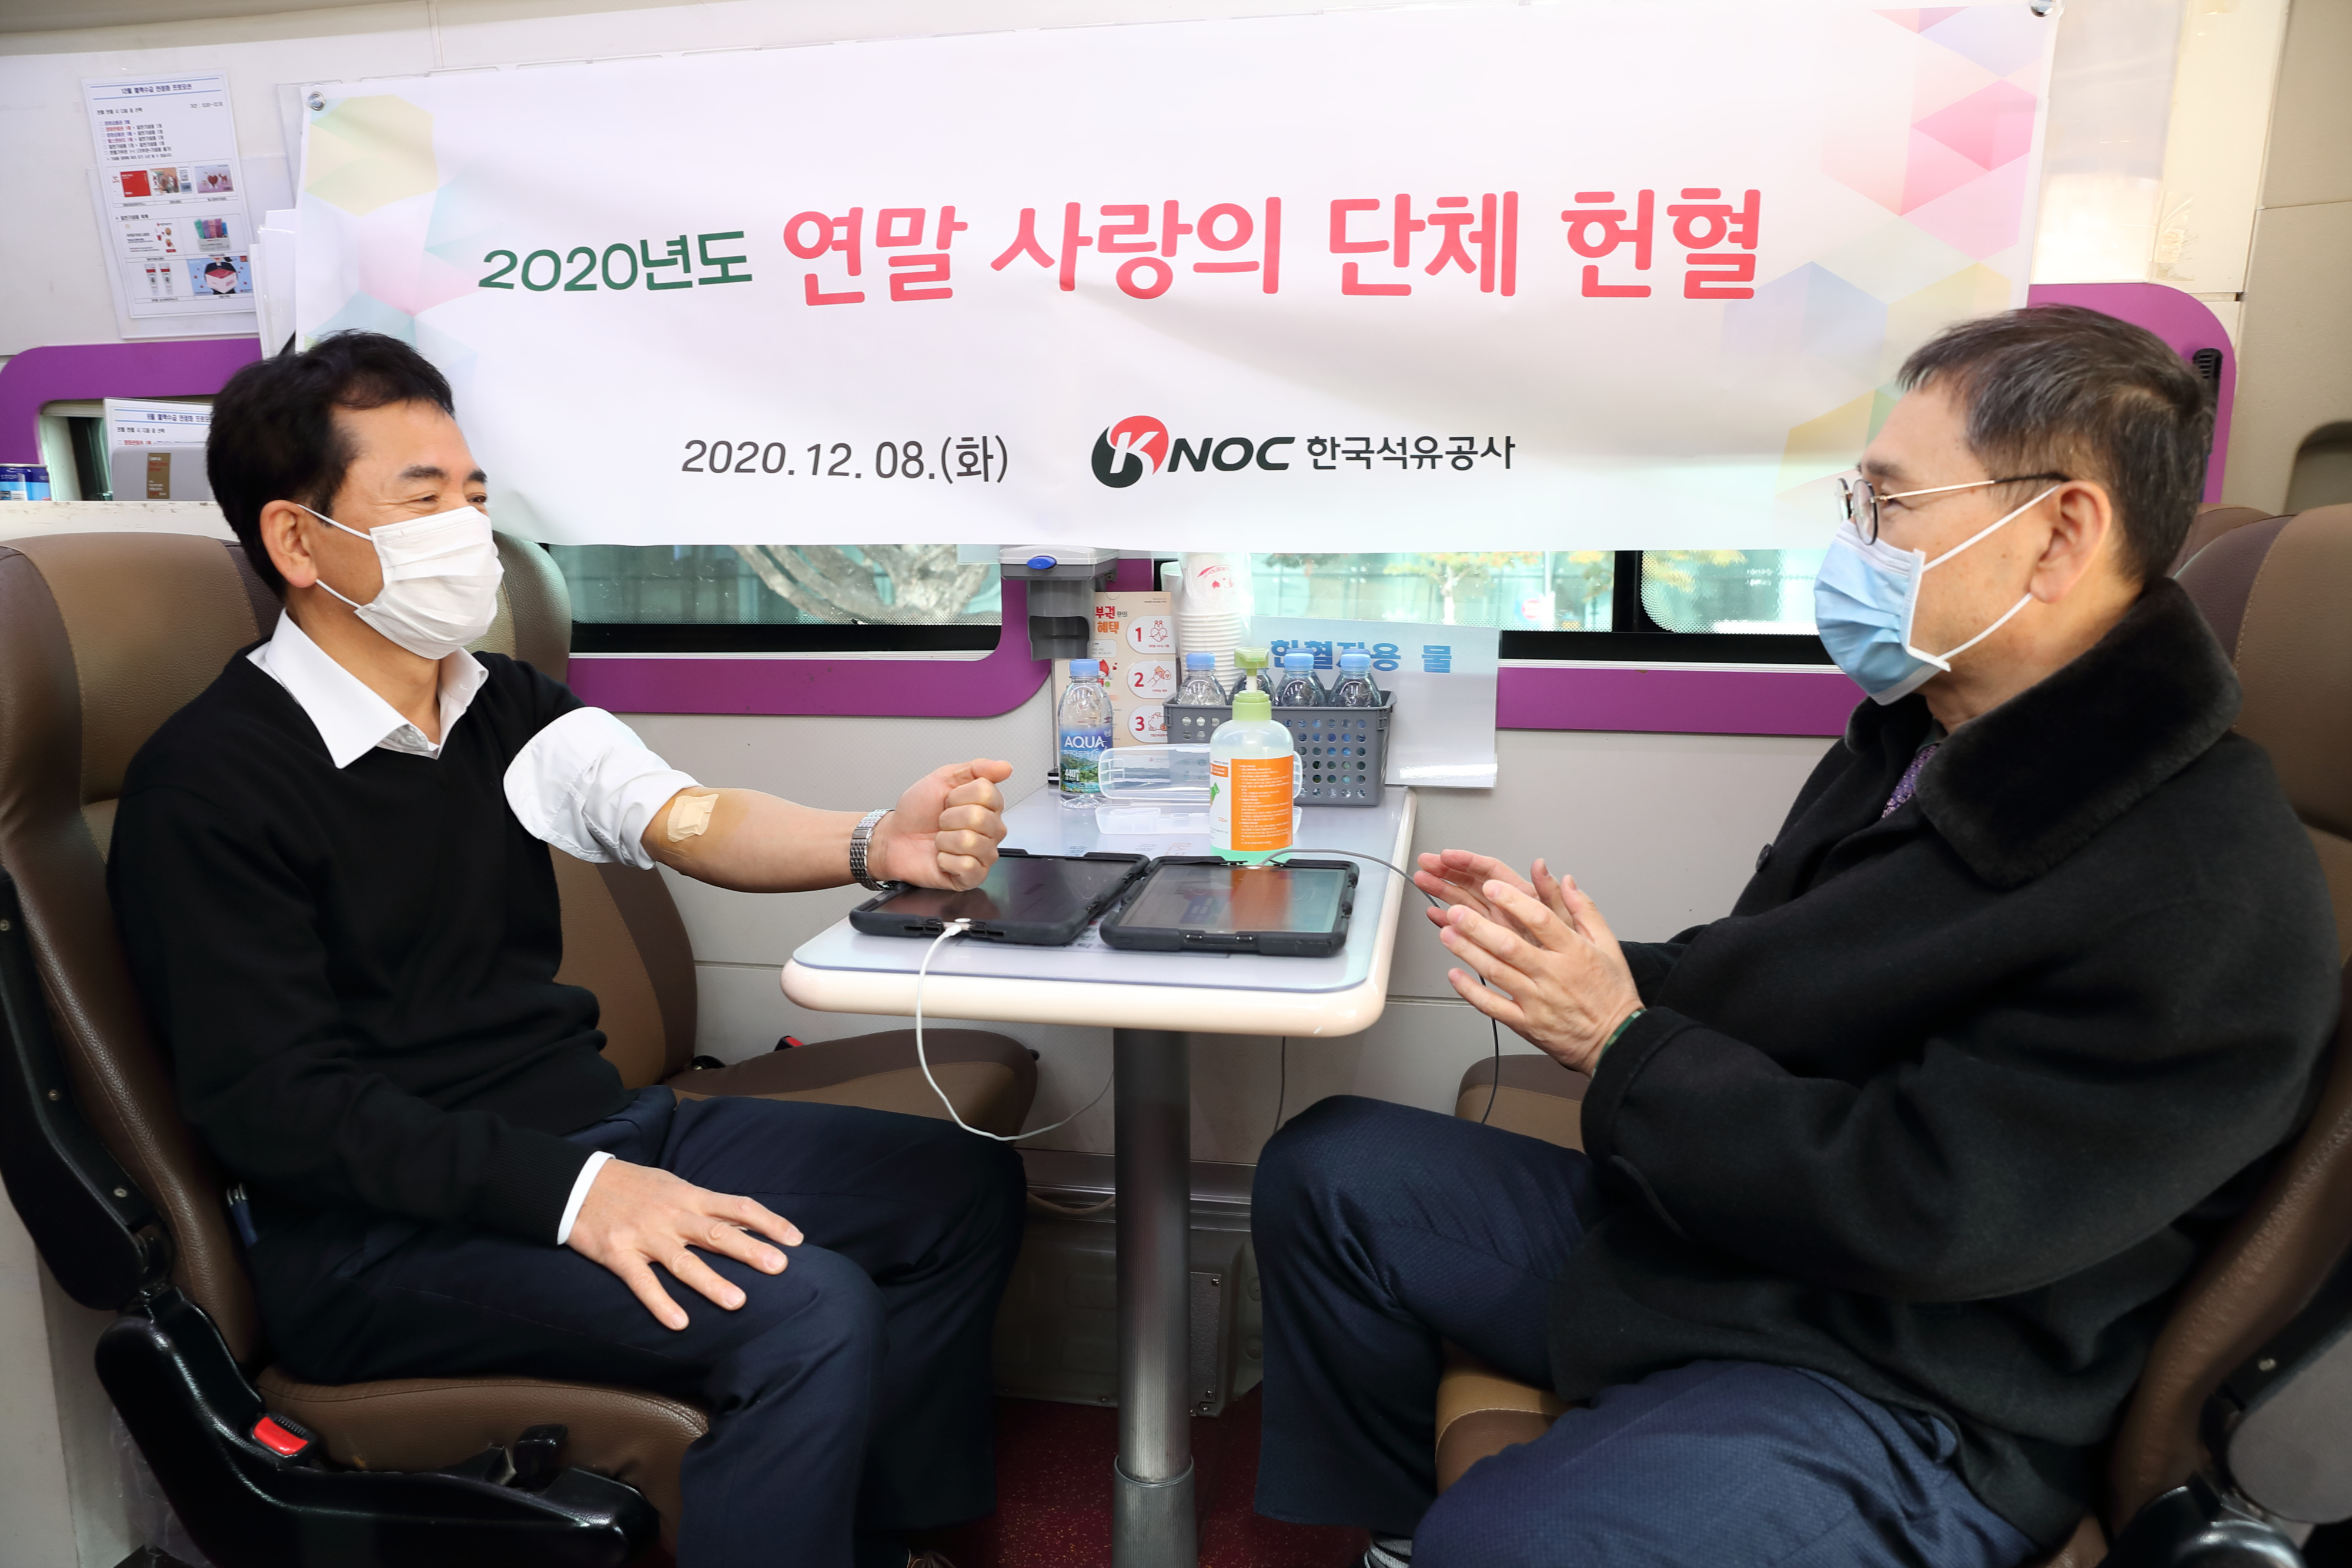 2. 한국석유공사 양수영 사장(사진 왼쪽)이 임직원들과 사랑의 헌혈에 동참했다.. .jpg : 1,756.229KB